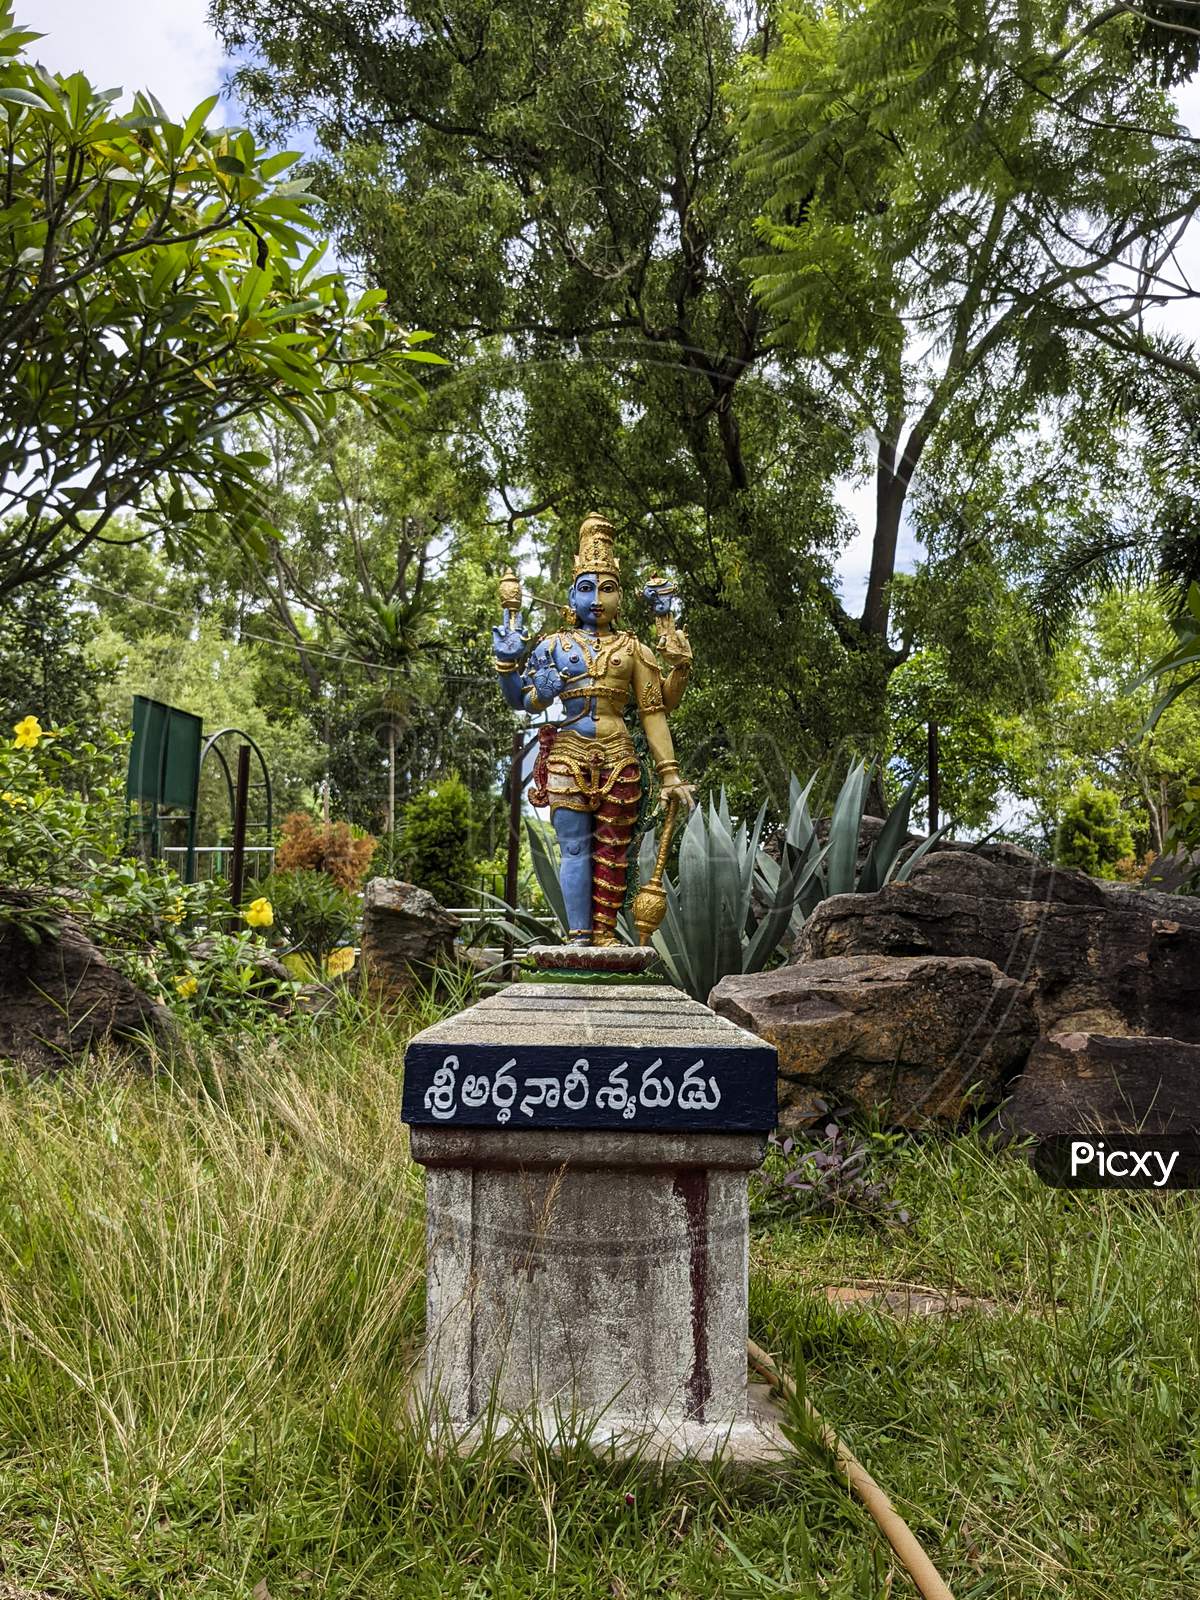 Long View of Lord Shiva-Parvathi Ardanarishwara Avatar idol in Natural Rock Garden in Vertical